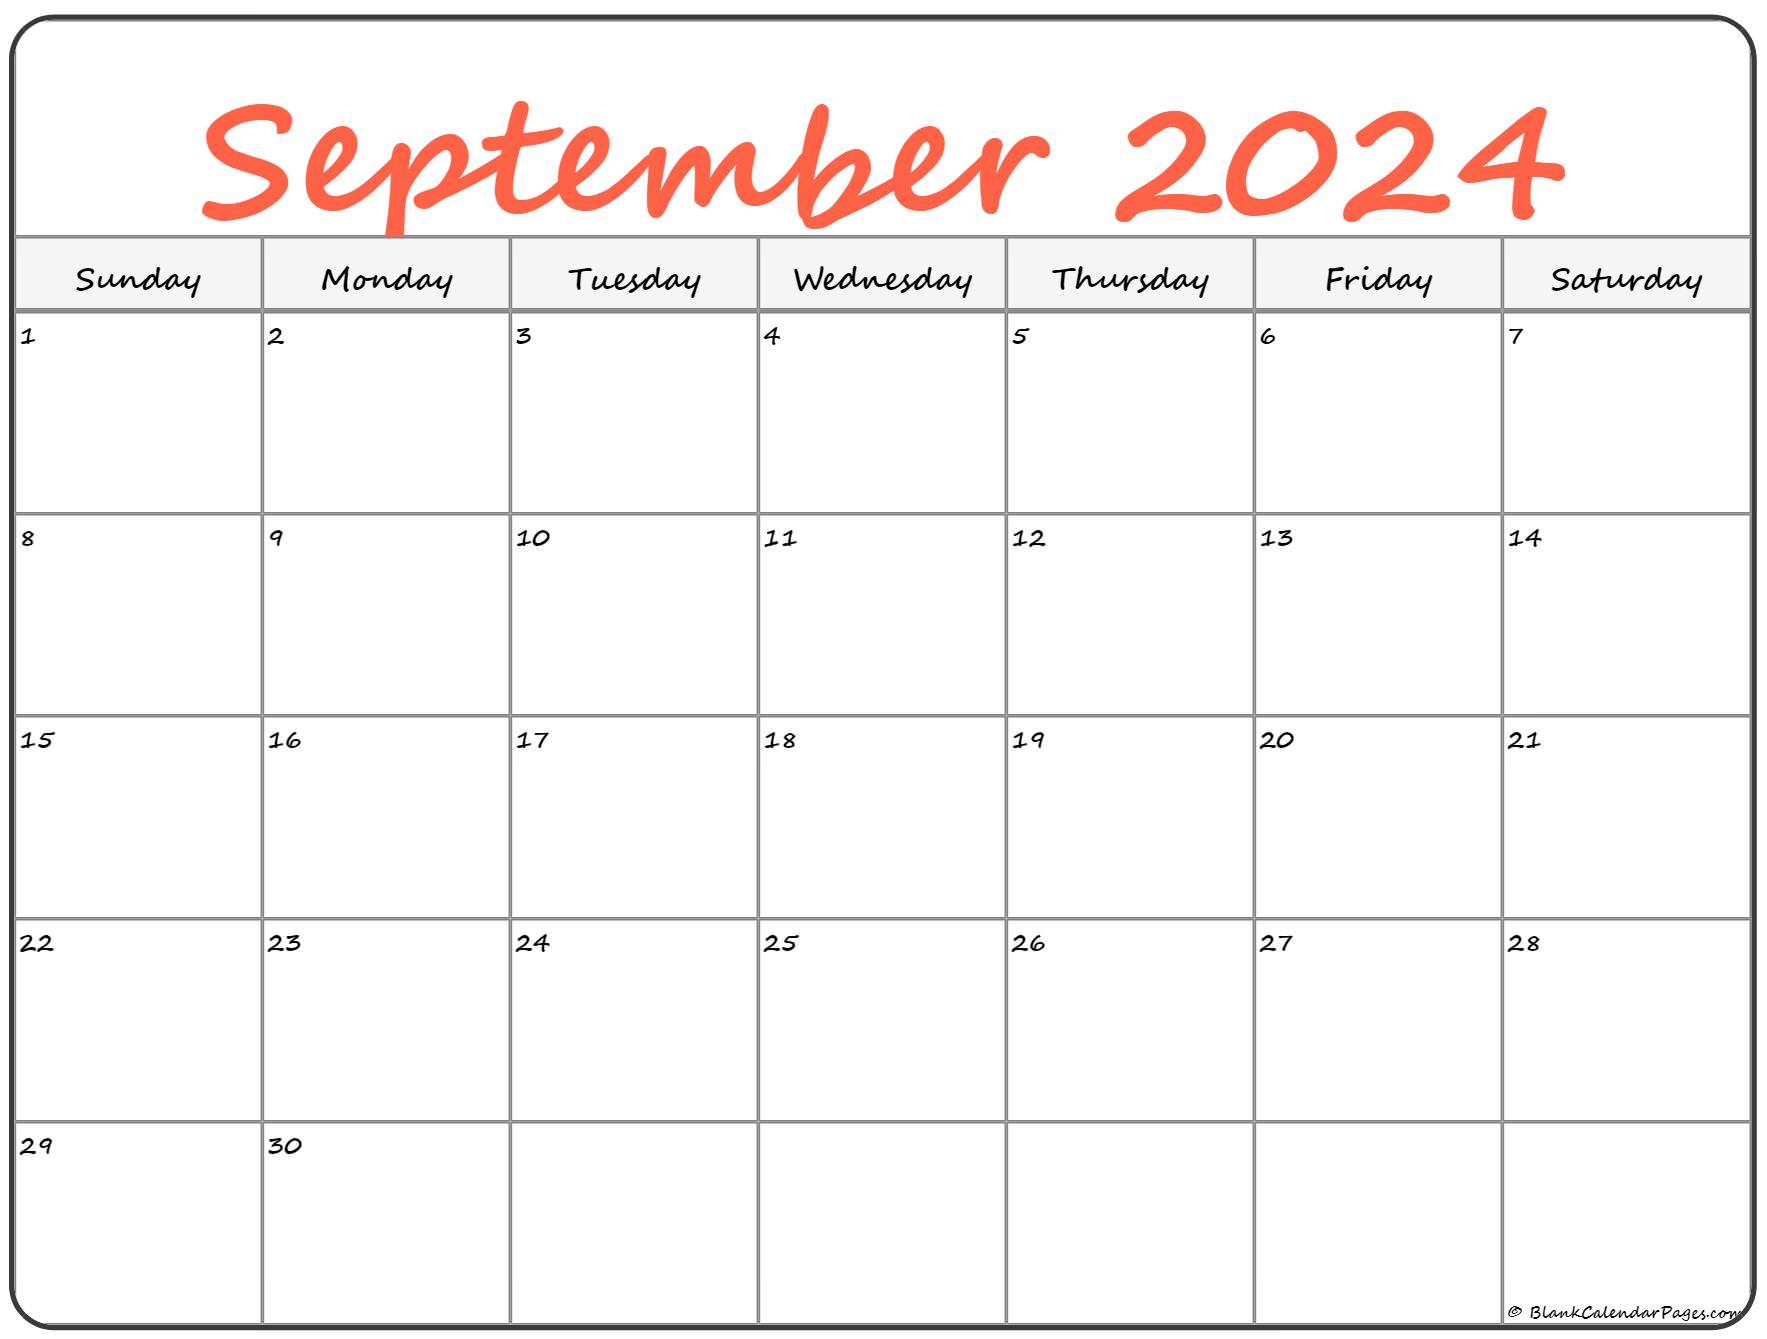 Printable Calendar 2022 September September 2022 Calendar | Free Printable Calendar Templates